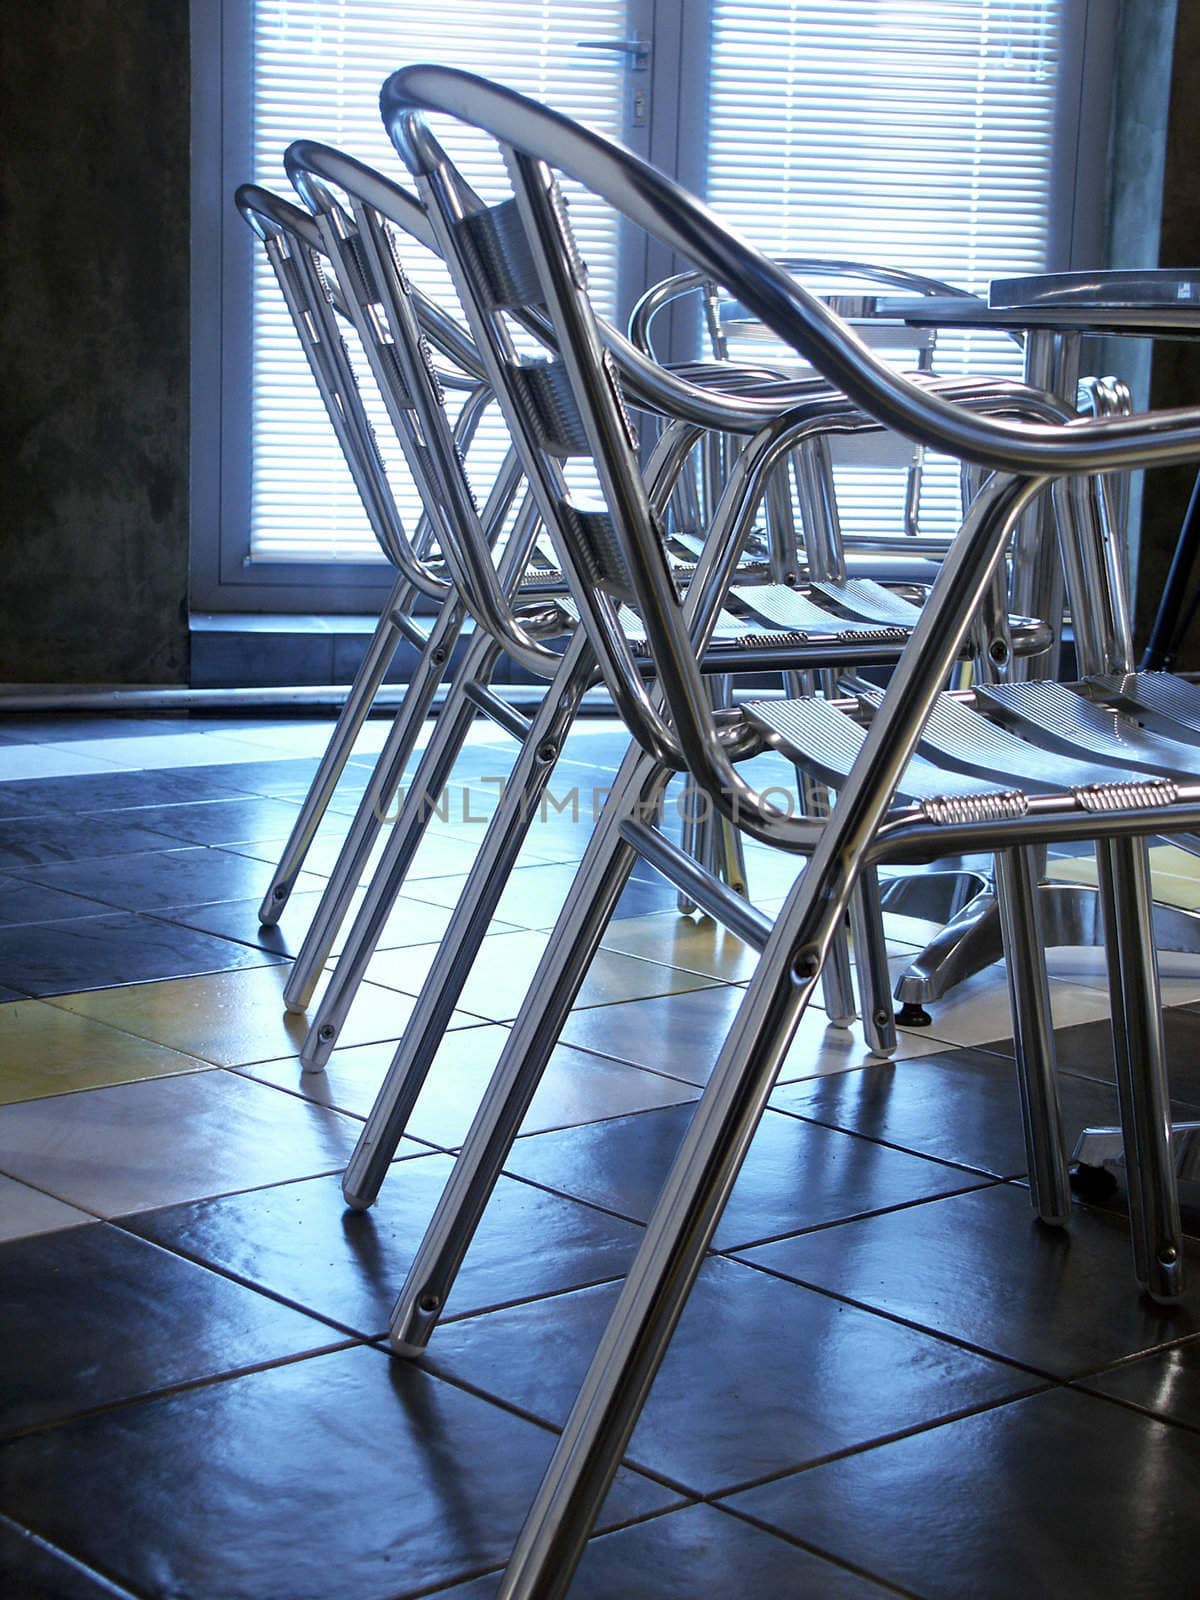 Steel chair in office by elenarostunova